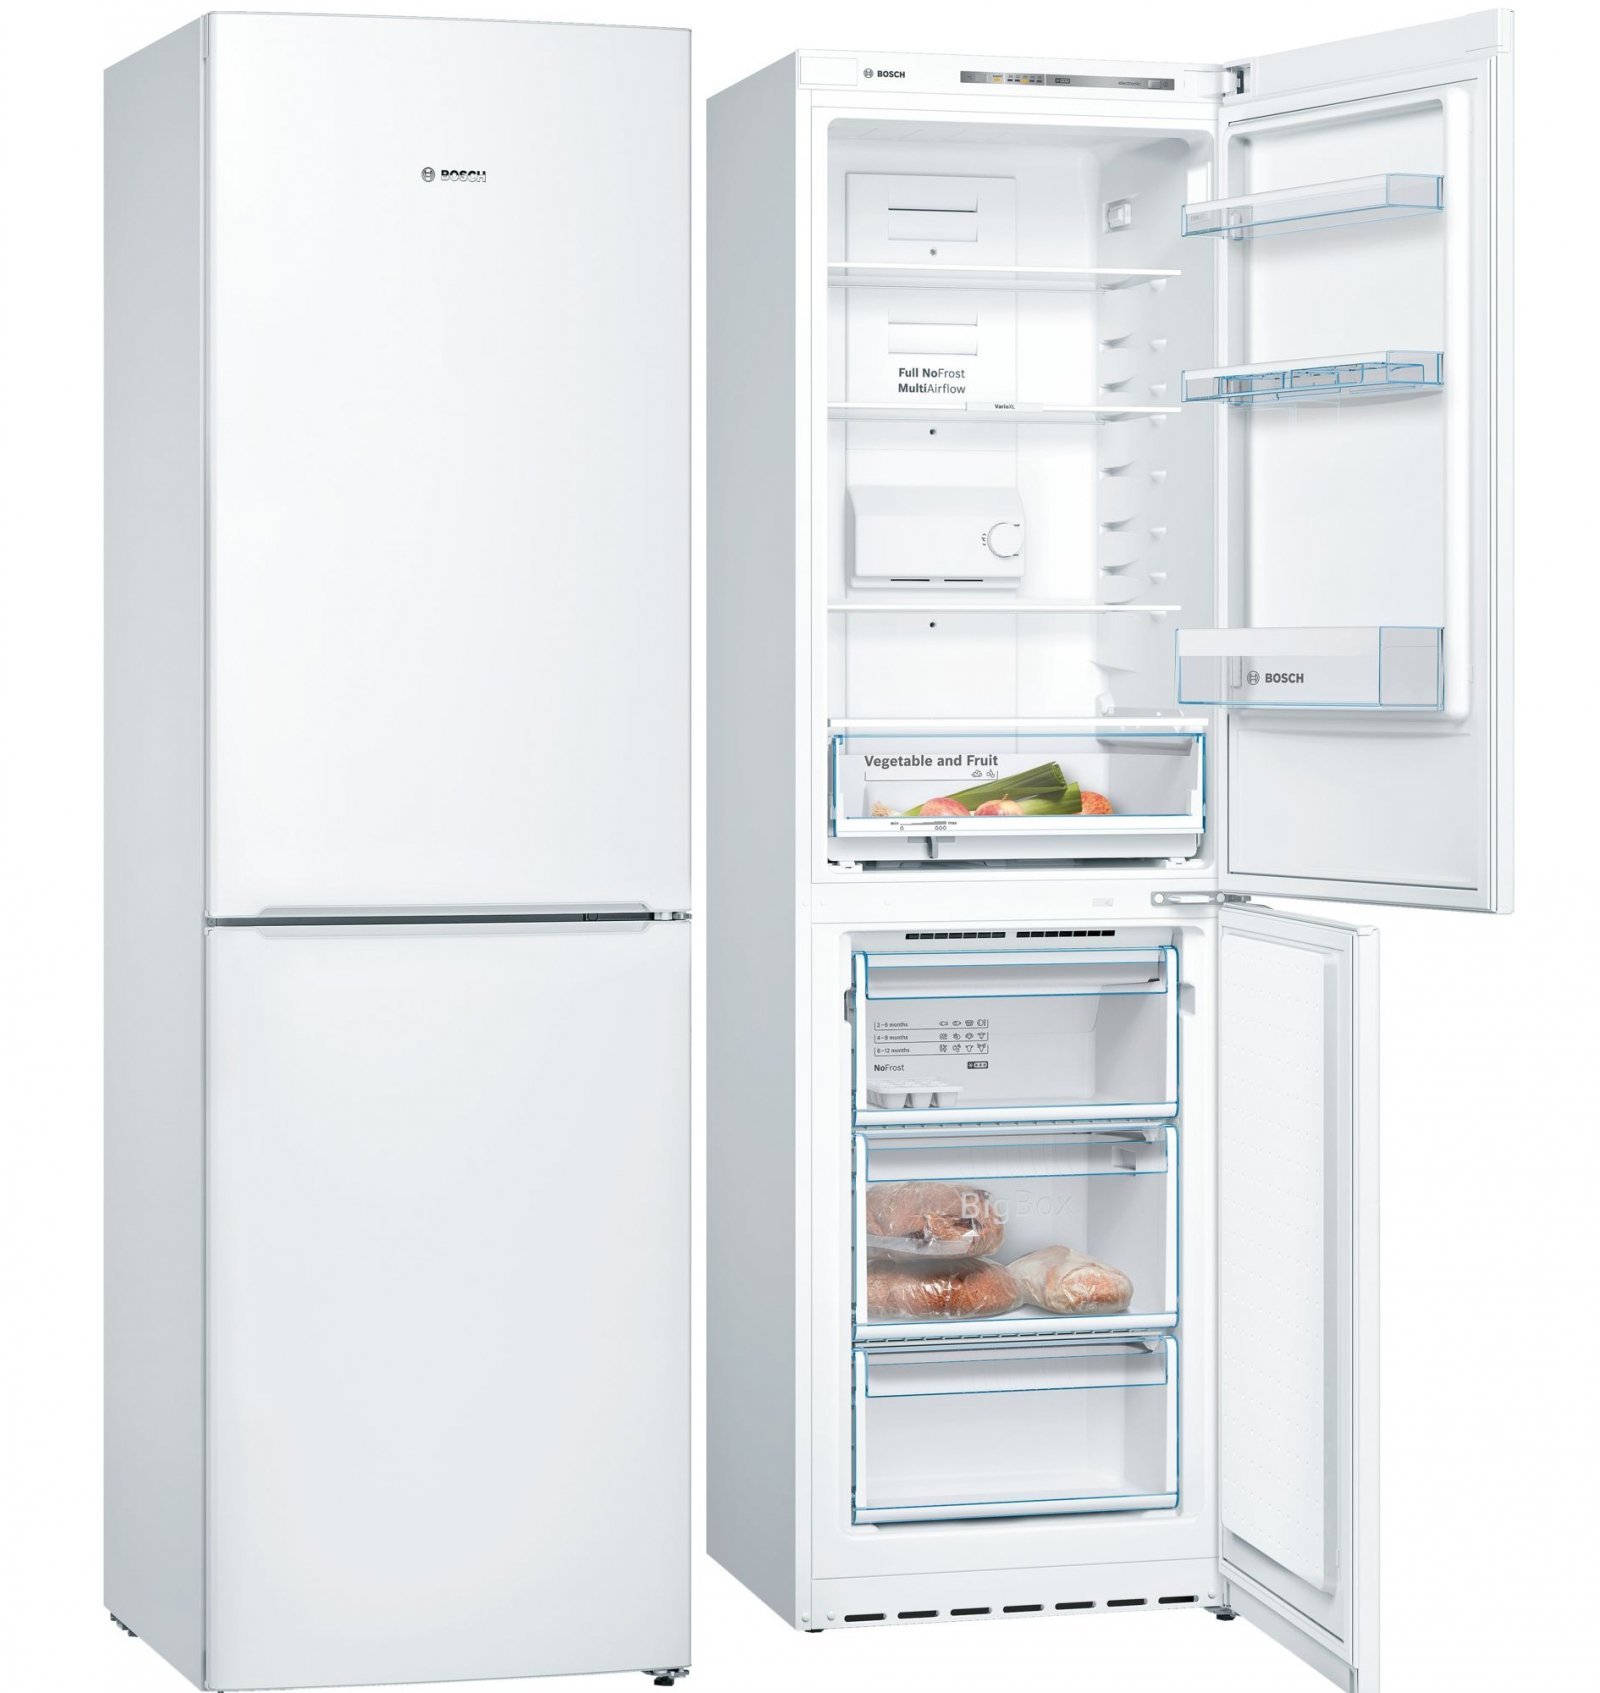 холодильник bosch kgn39nw14r, купить в Красноярске холодильник bosch kgn39nw14r,  купить в Красноярске дешево холодильник bosch kgn39nw14r, купить в Красноярске минимальной цене холодильник bosch kgn39nw14r